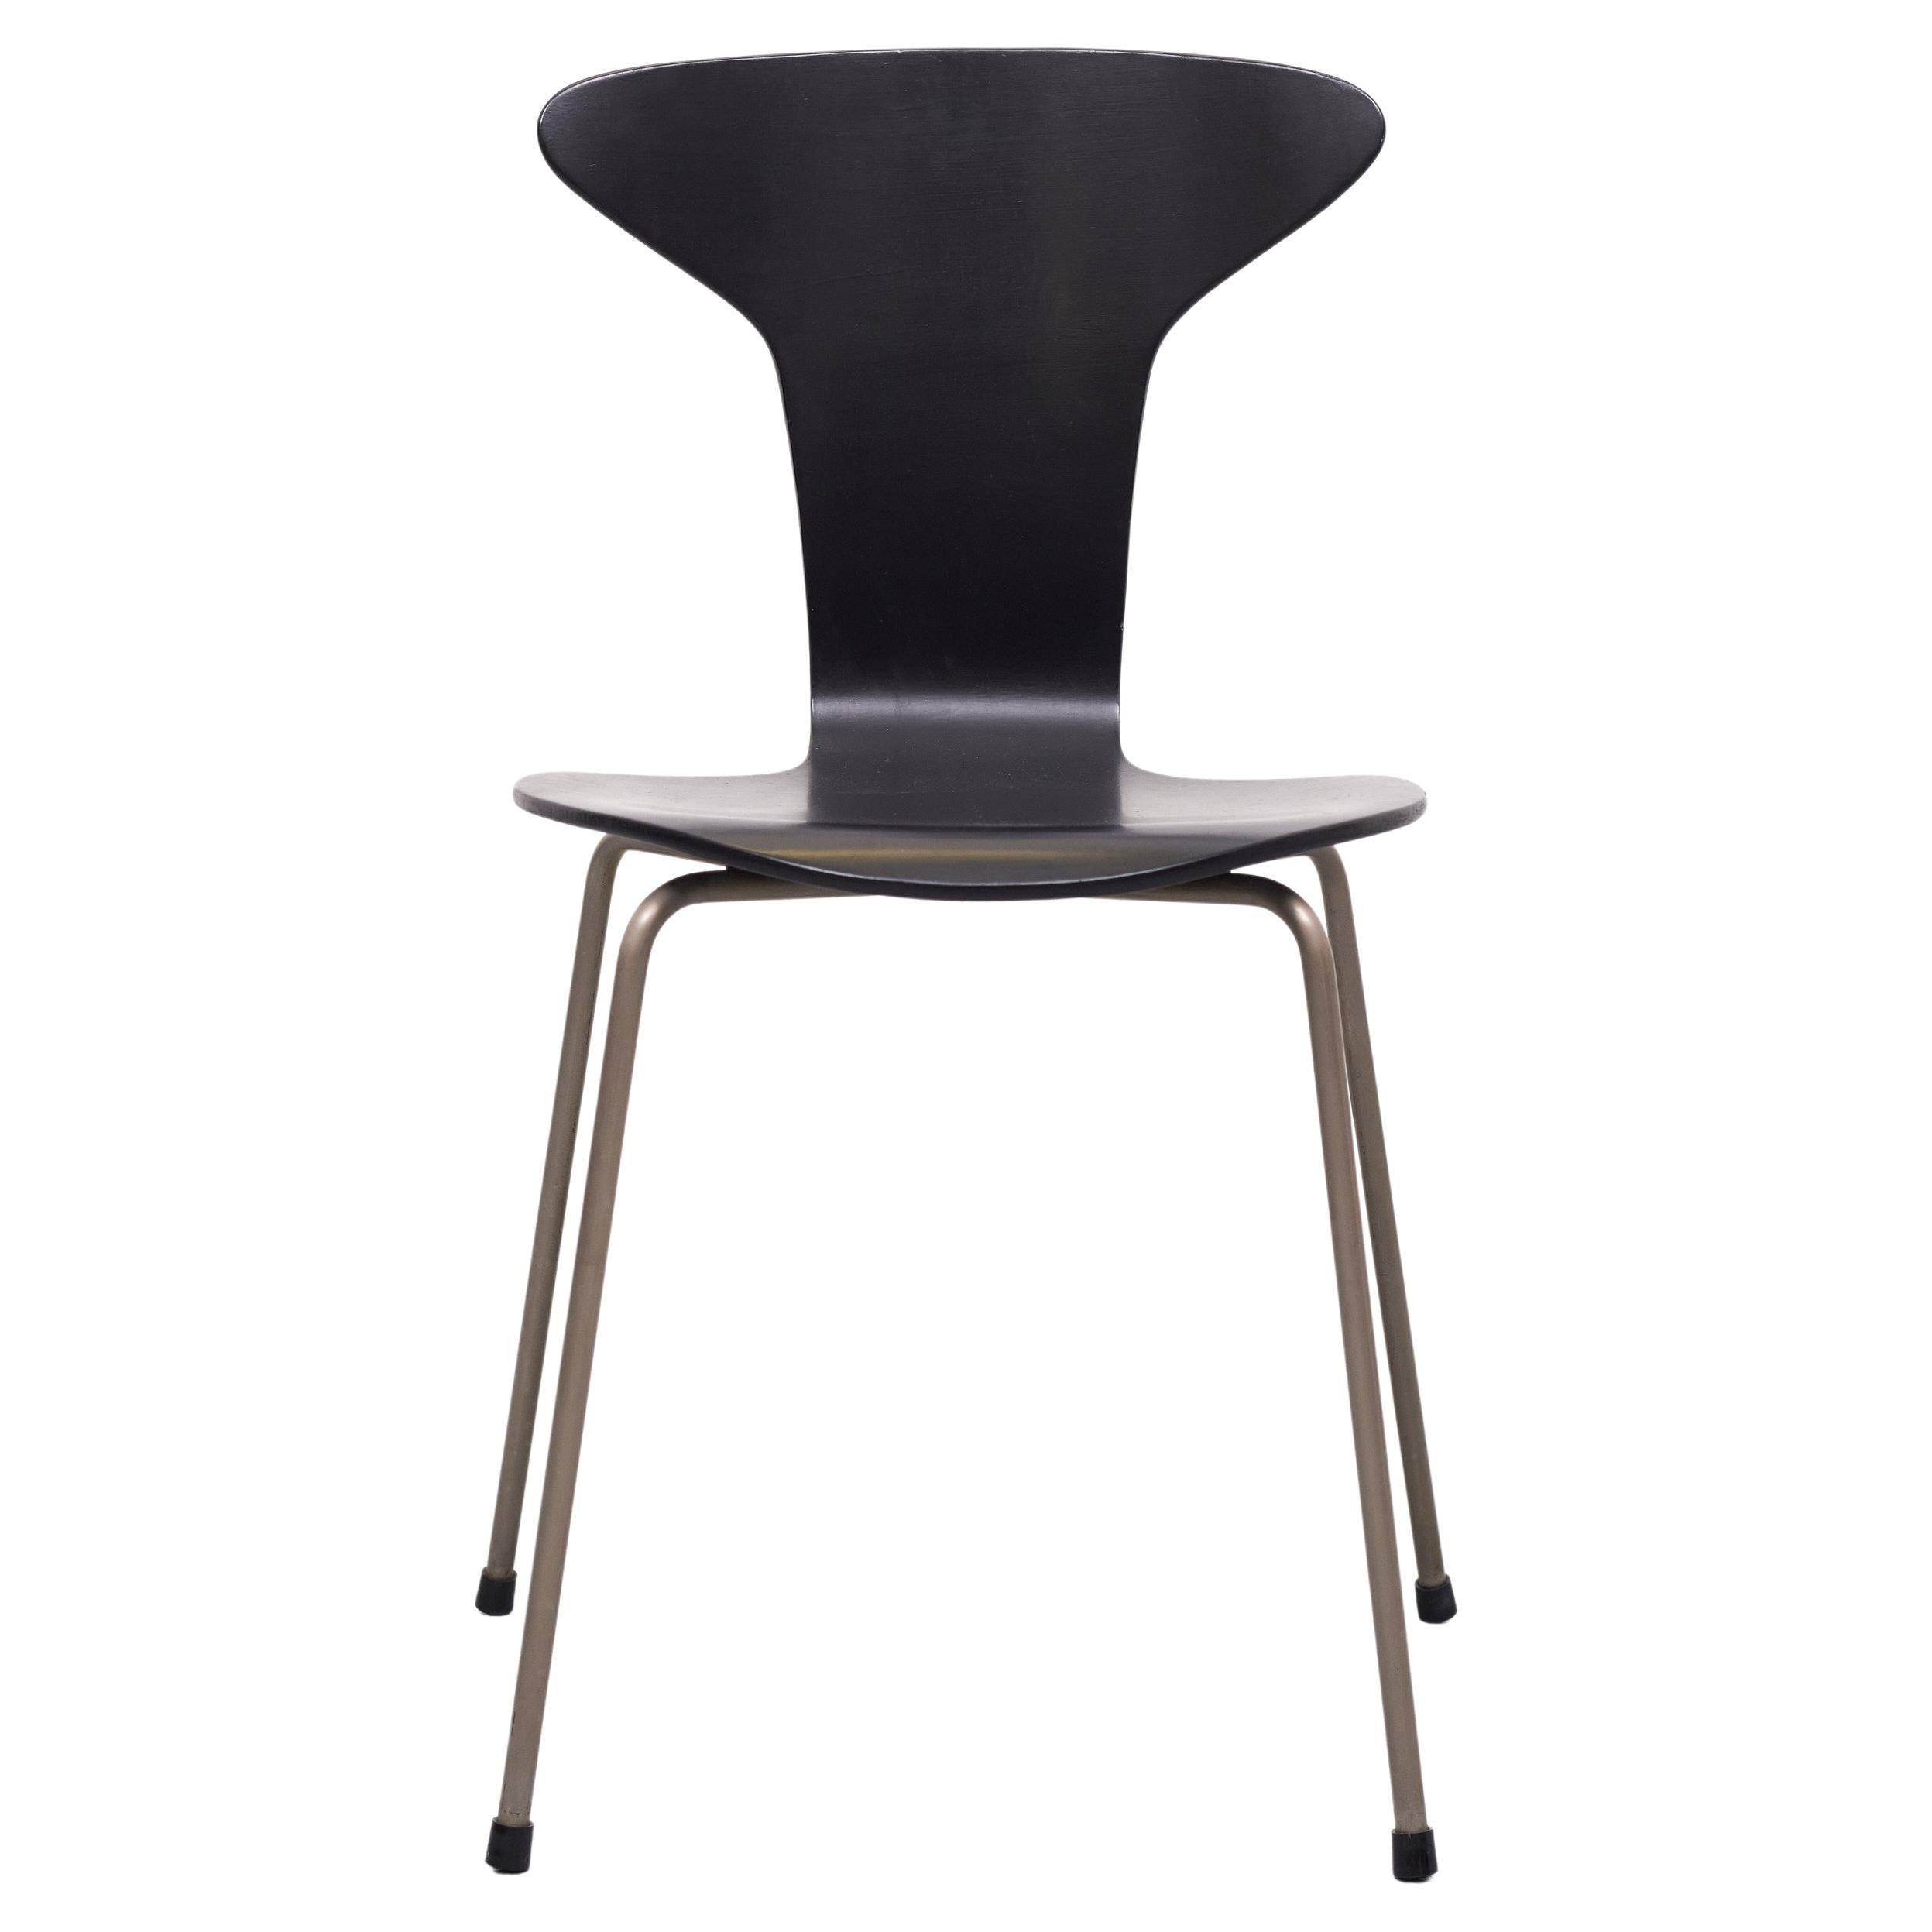 Mosquito-Stuhl 3105 von Arne Jacobsen für Fritz Hansen, 1960er Jahre